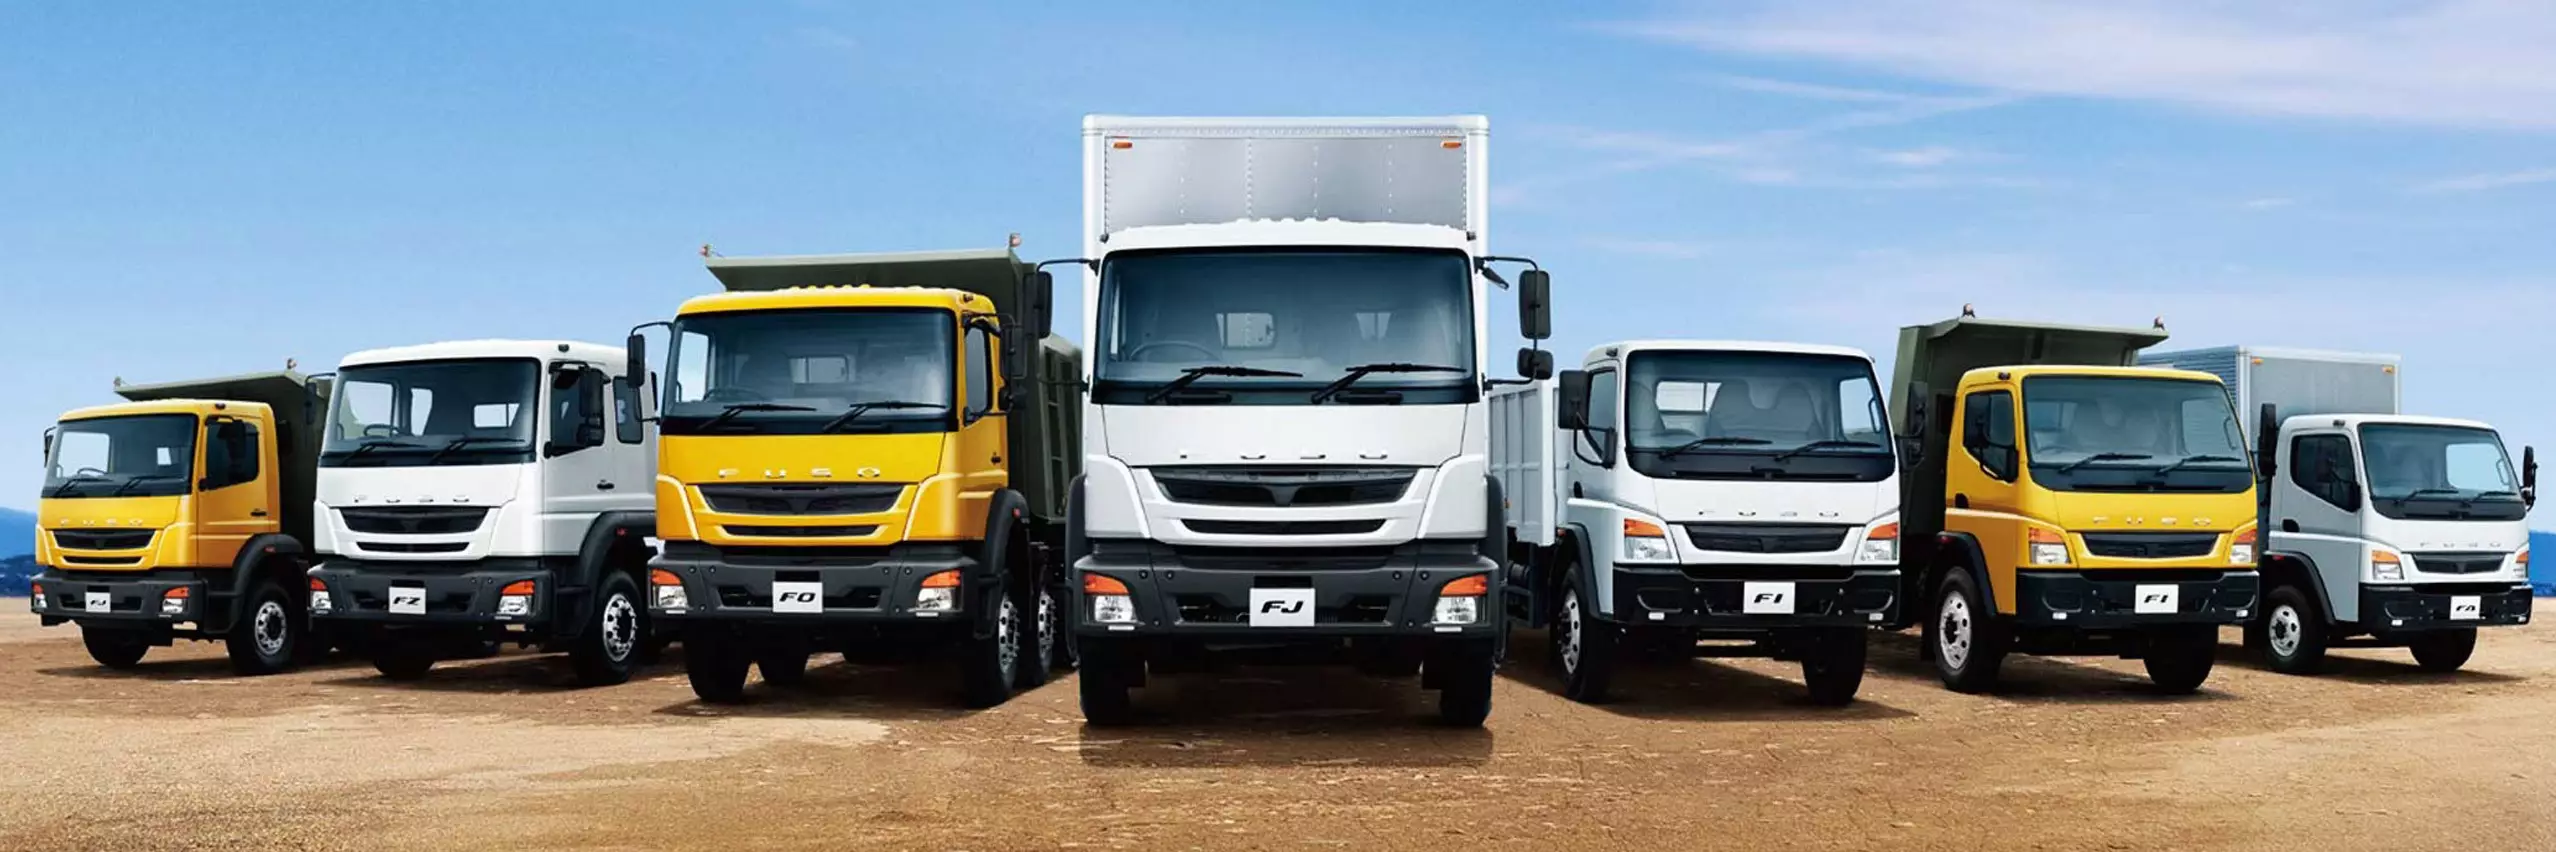 La iconica gama de productos FUSO, que ofrece camiones de carga de maxima calidad para negocios